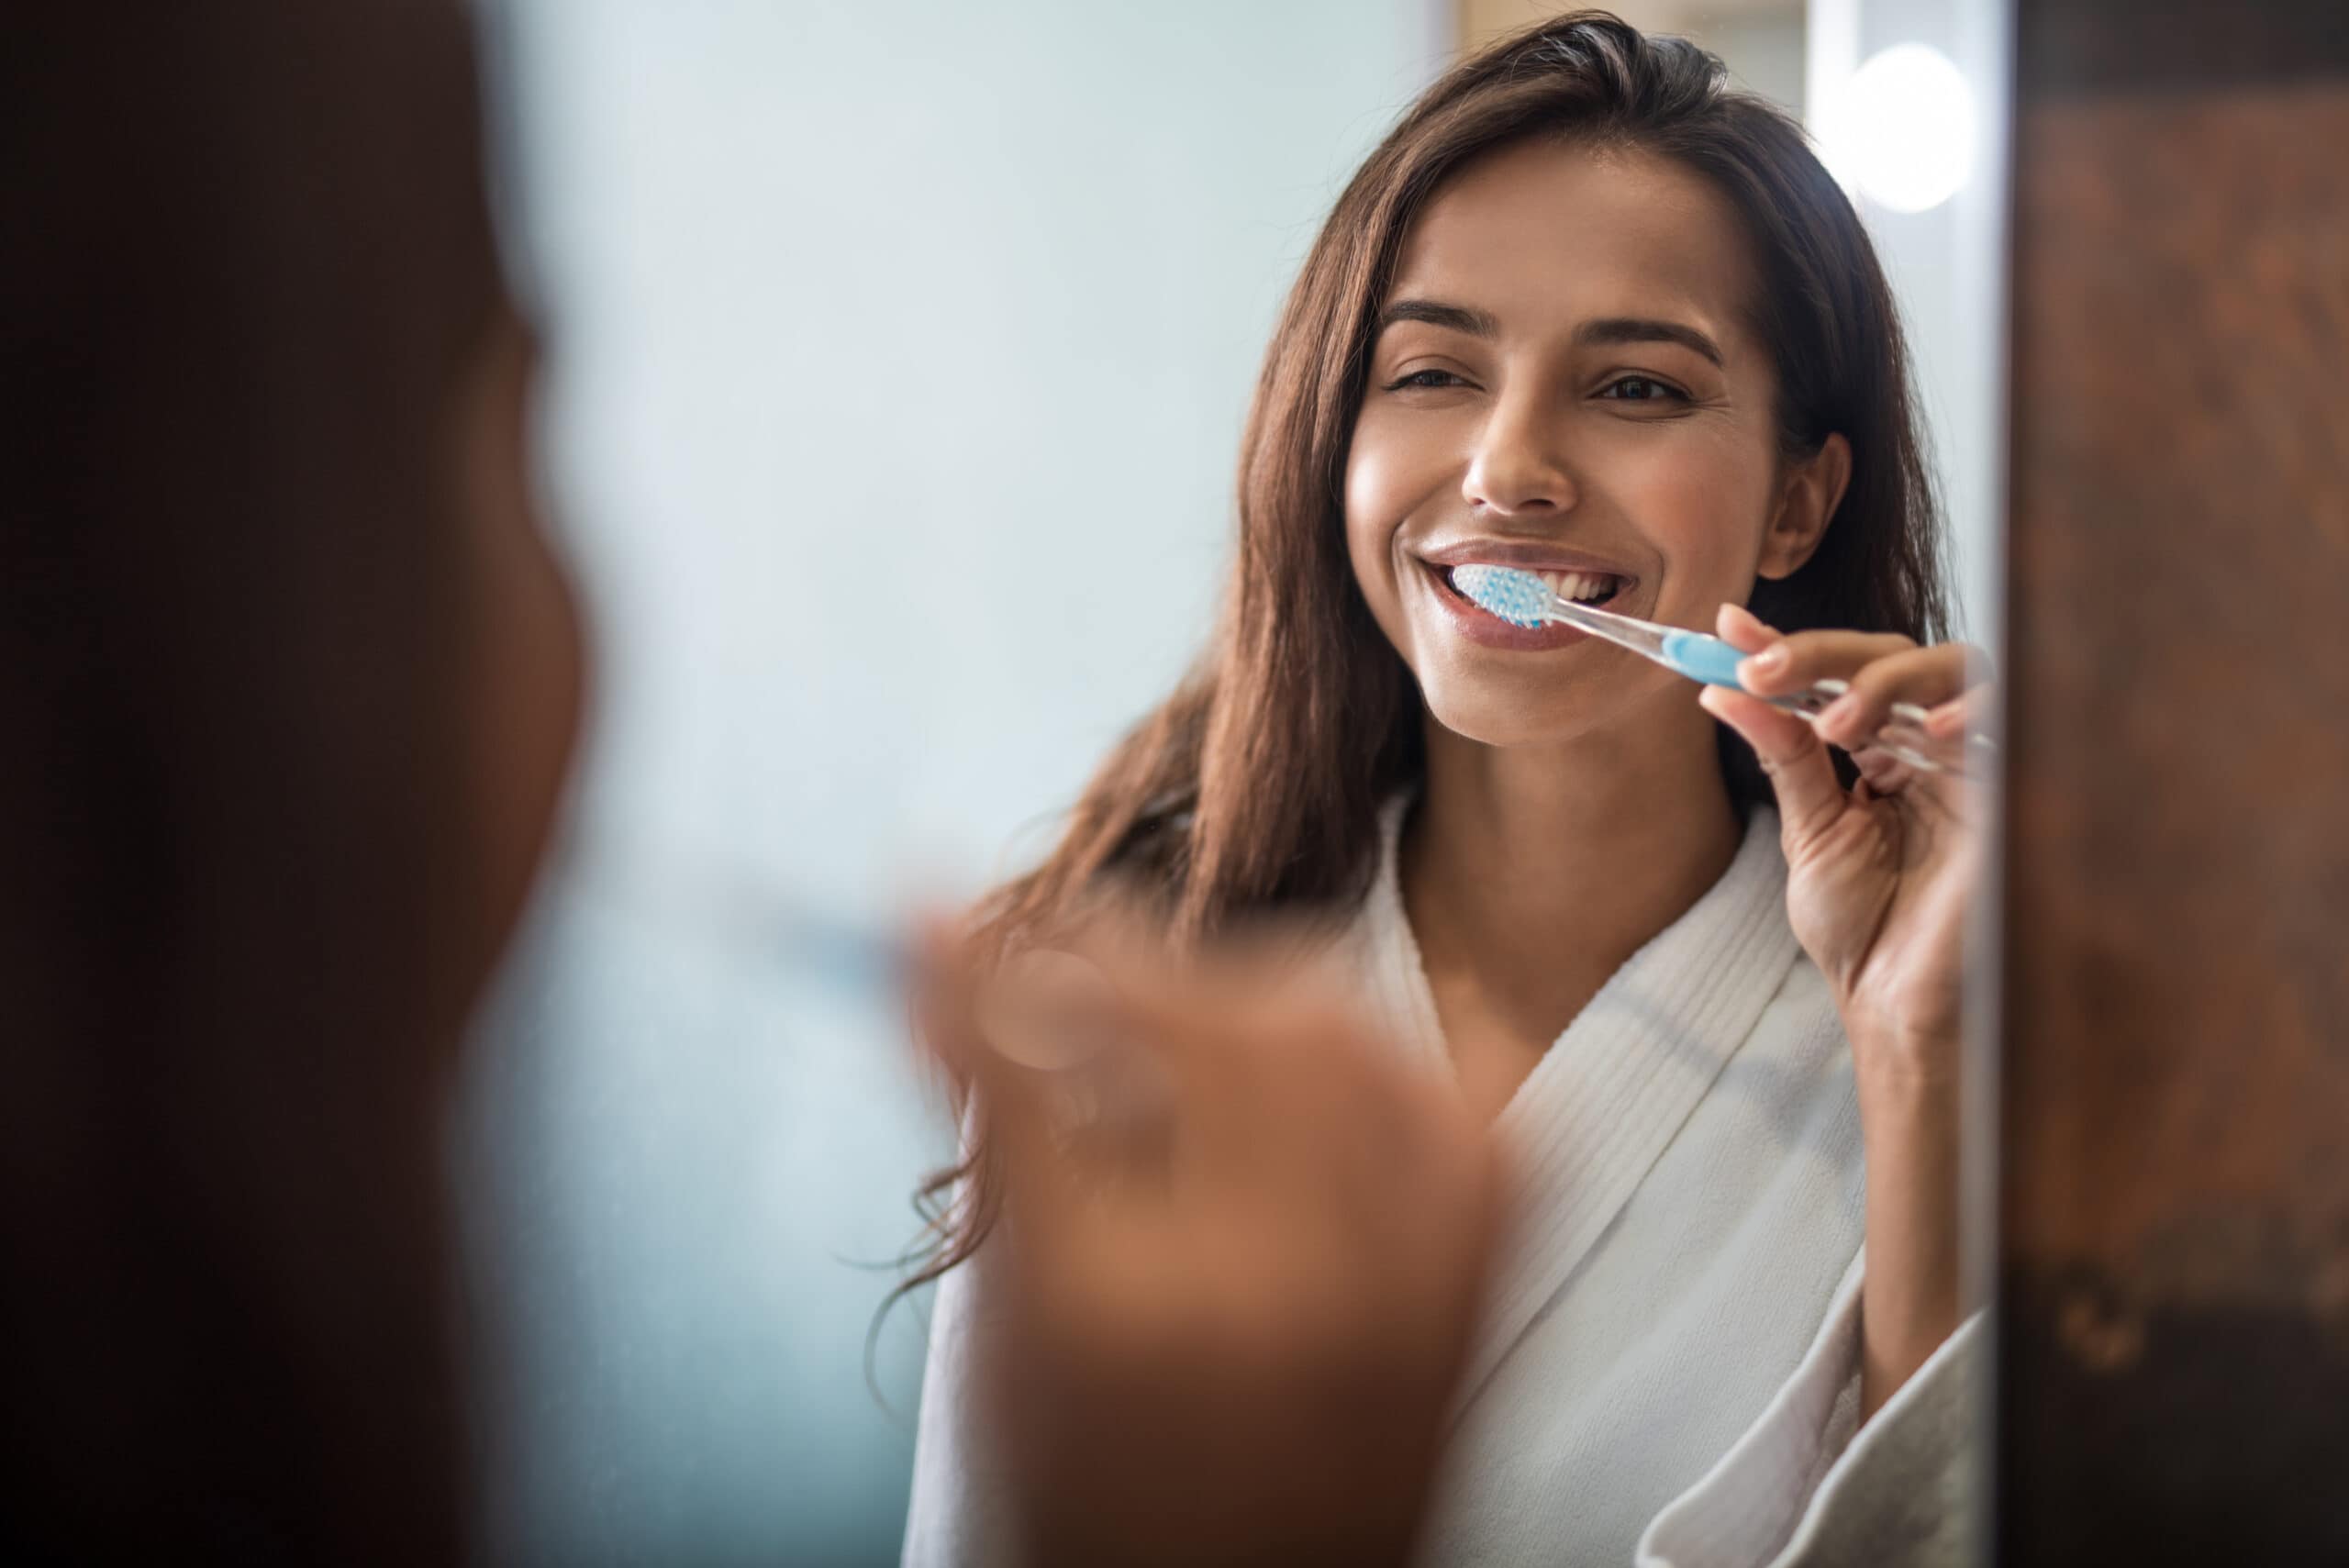 Gesund im Mund – So pflegen Sie Ihre Zähne optimal